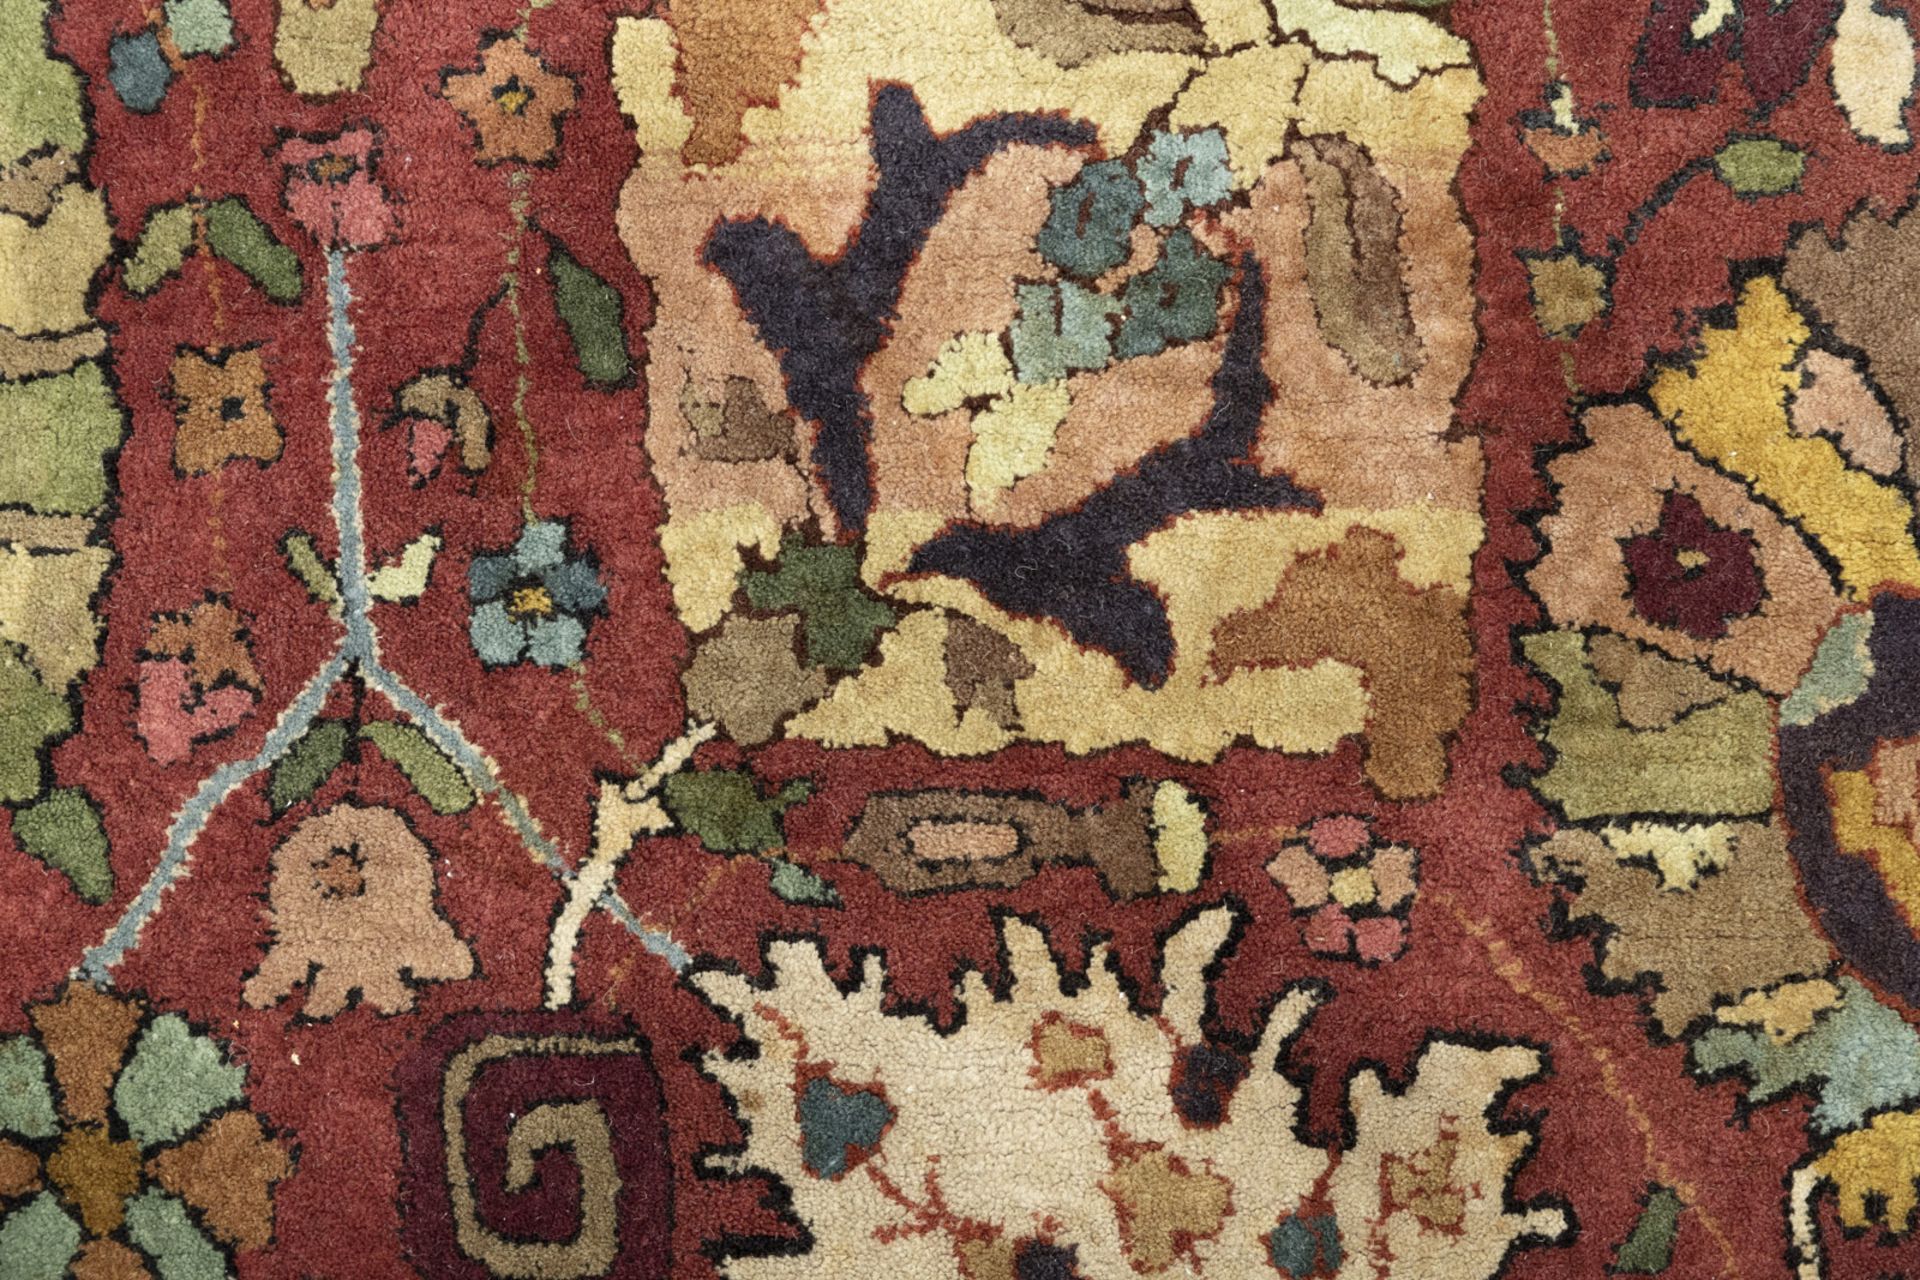 Tetex Webteppich mit antikem Vasenmuster - Bild 3 aus 6